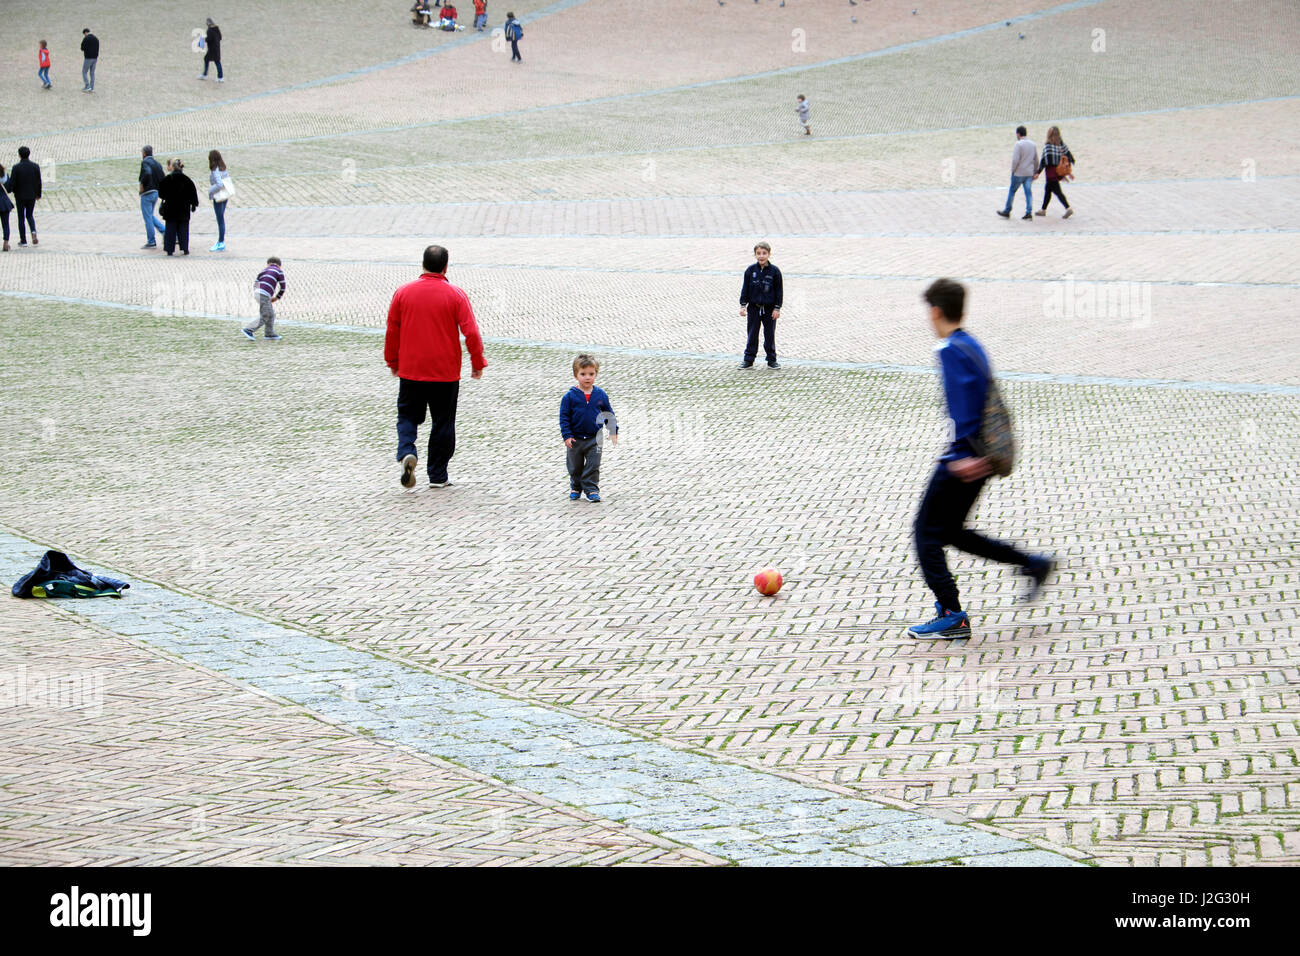 Straßenfußball - jungen und Kind spielt Fußball (Fußball) im italienischen historischen Platz - Menschen im Hintergrund - Piazza del Campo, Siena, Italien Stockfoto